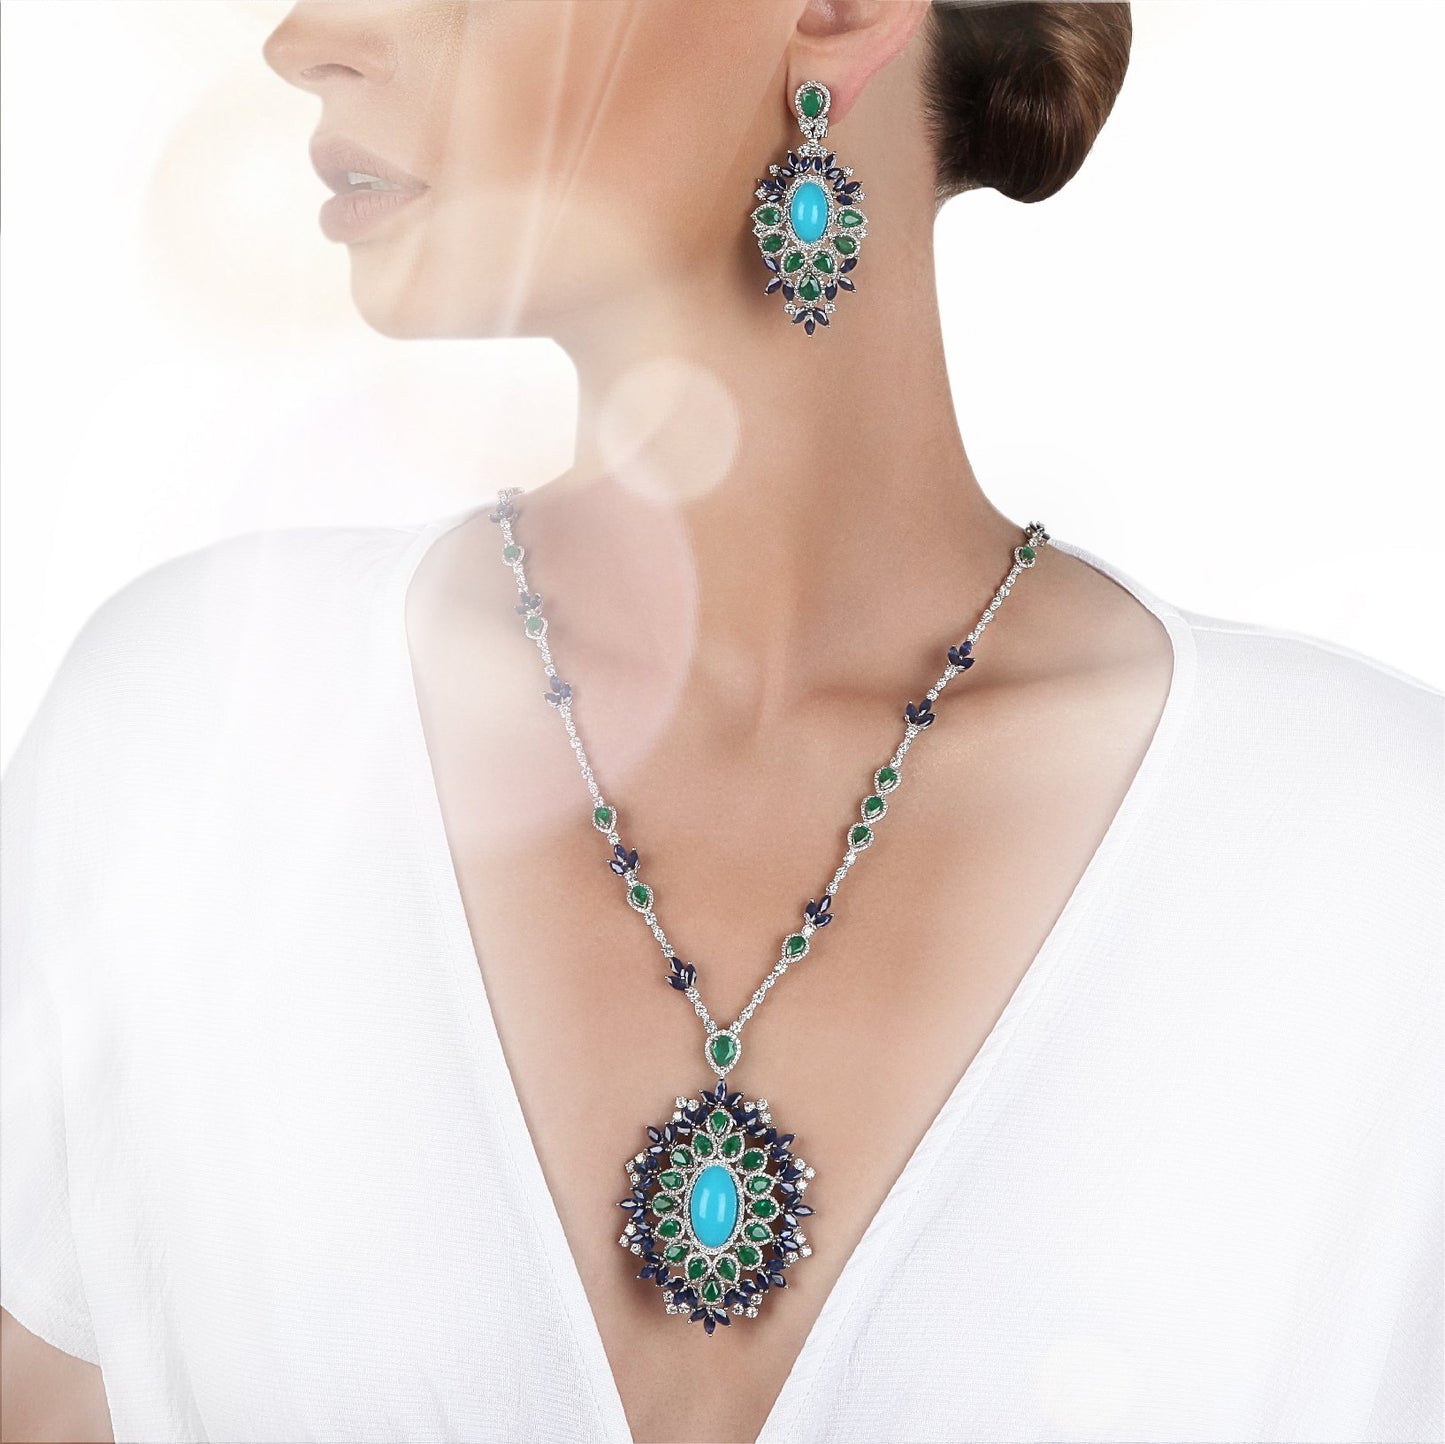 Order earrings online in Saudi Arabia | Jewelry online in Kuwait